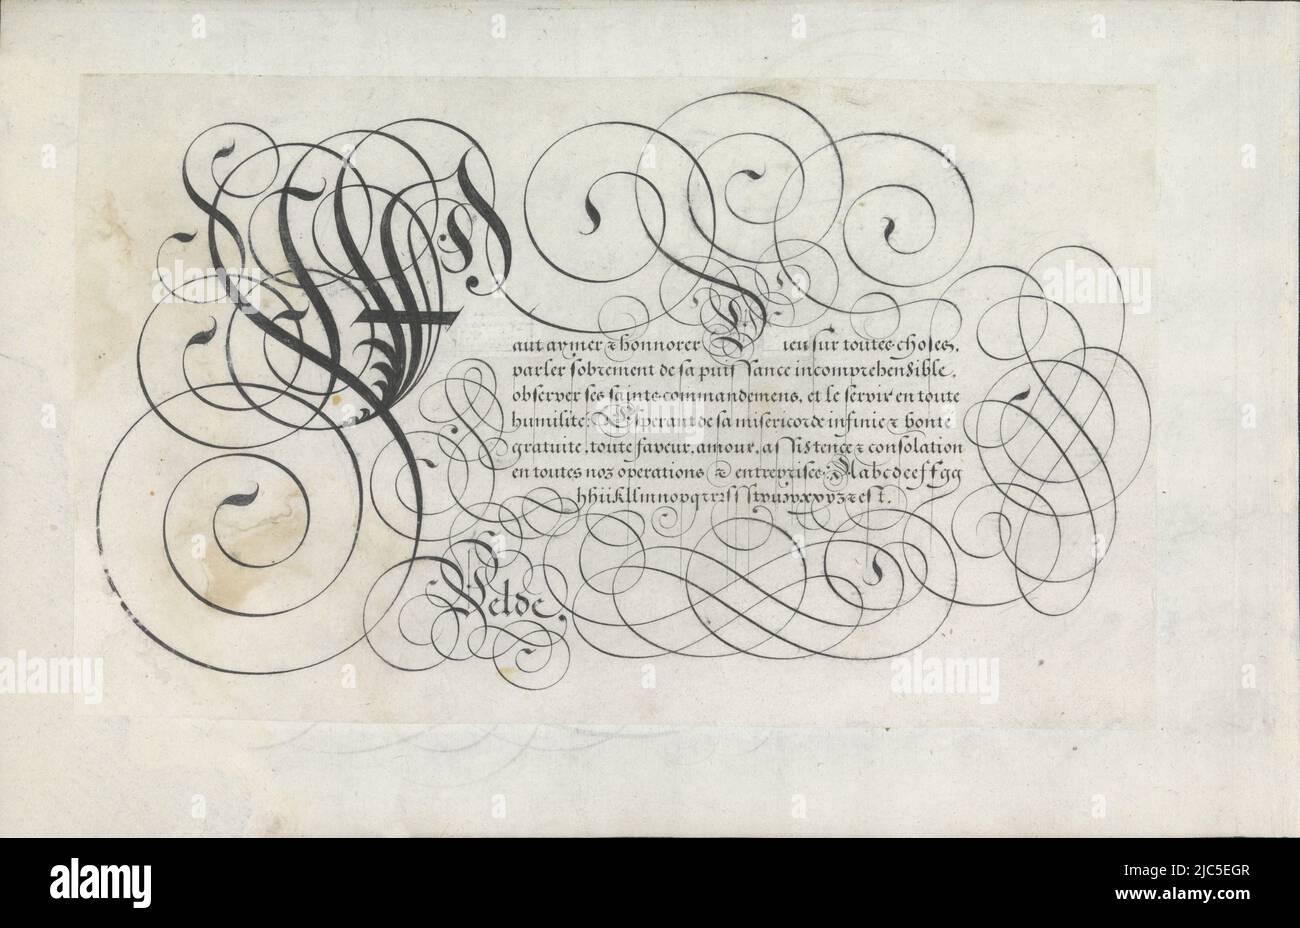 Kalligrafische Zeichnung mit einer ornamentierten Initiale F und sieben Textzeilen: Faut aymer ... Unten ein Kleinbuchstaben in der entsprechenden Hand. Der Text wird von Scrollwork umrahmt. Die Zeichnung ist Teil eines Albums, Design of a writing sample: Haut aymer (...) Spieghel der schrijfkonzste (Serientitel), Jan van de Velde (I), (auf Objekt erwähnt), Rotterdam, 1605, Papier, Stift, H 167 mm × B 280 mm Stockfoto